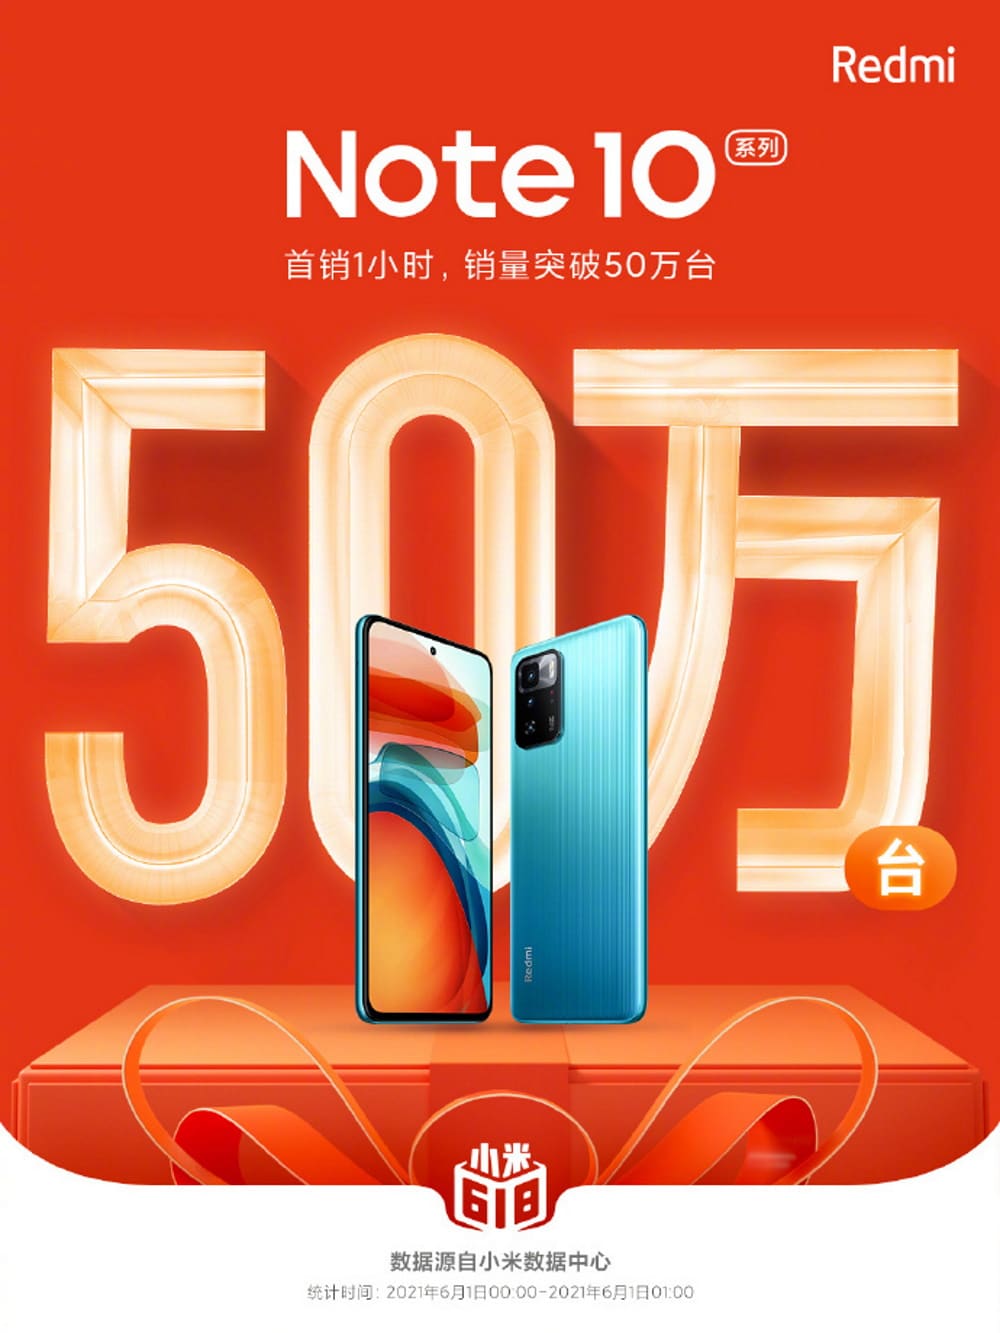 Imagem oficial da Redmi mostra que a empresa vende como água os aparelhos da linha Note 10